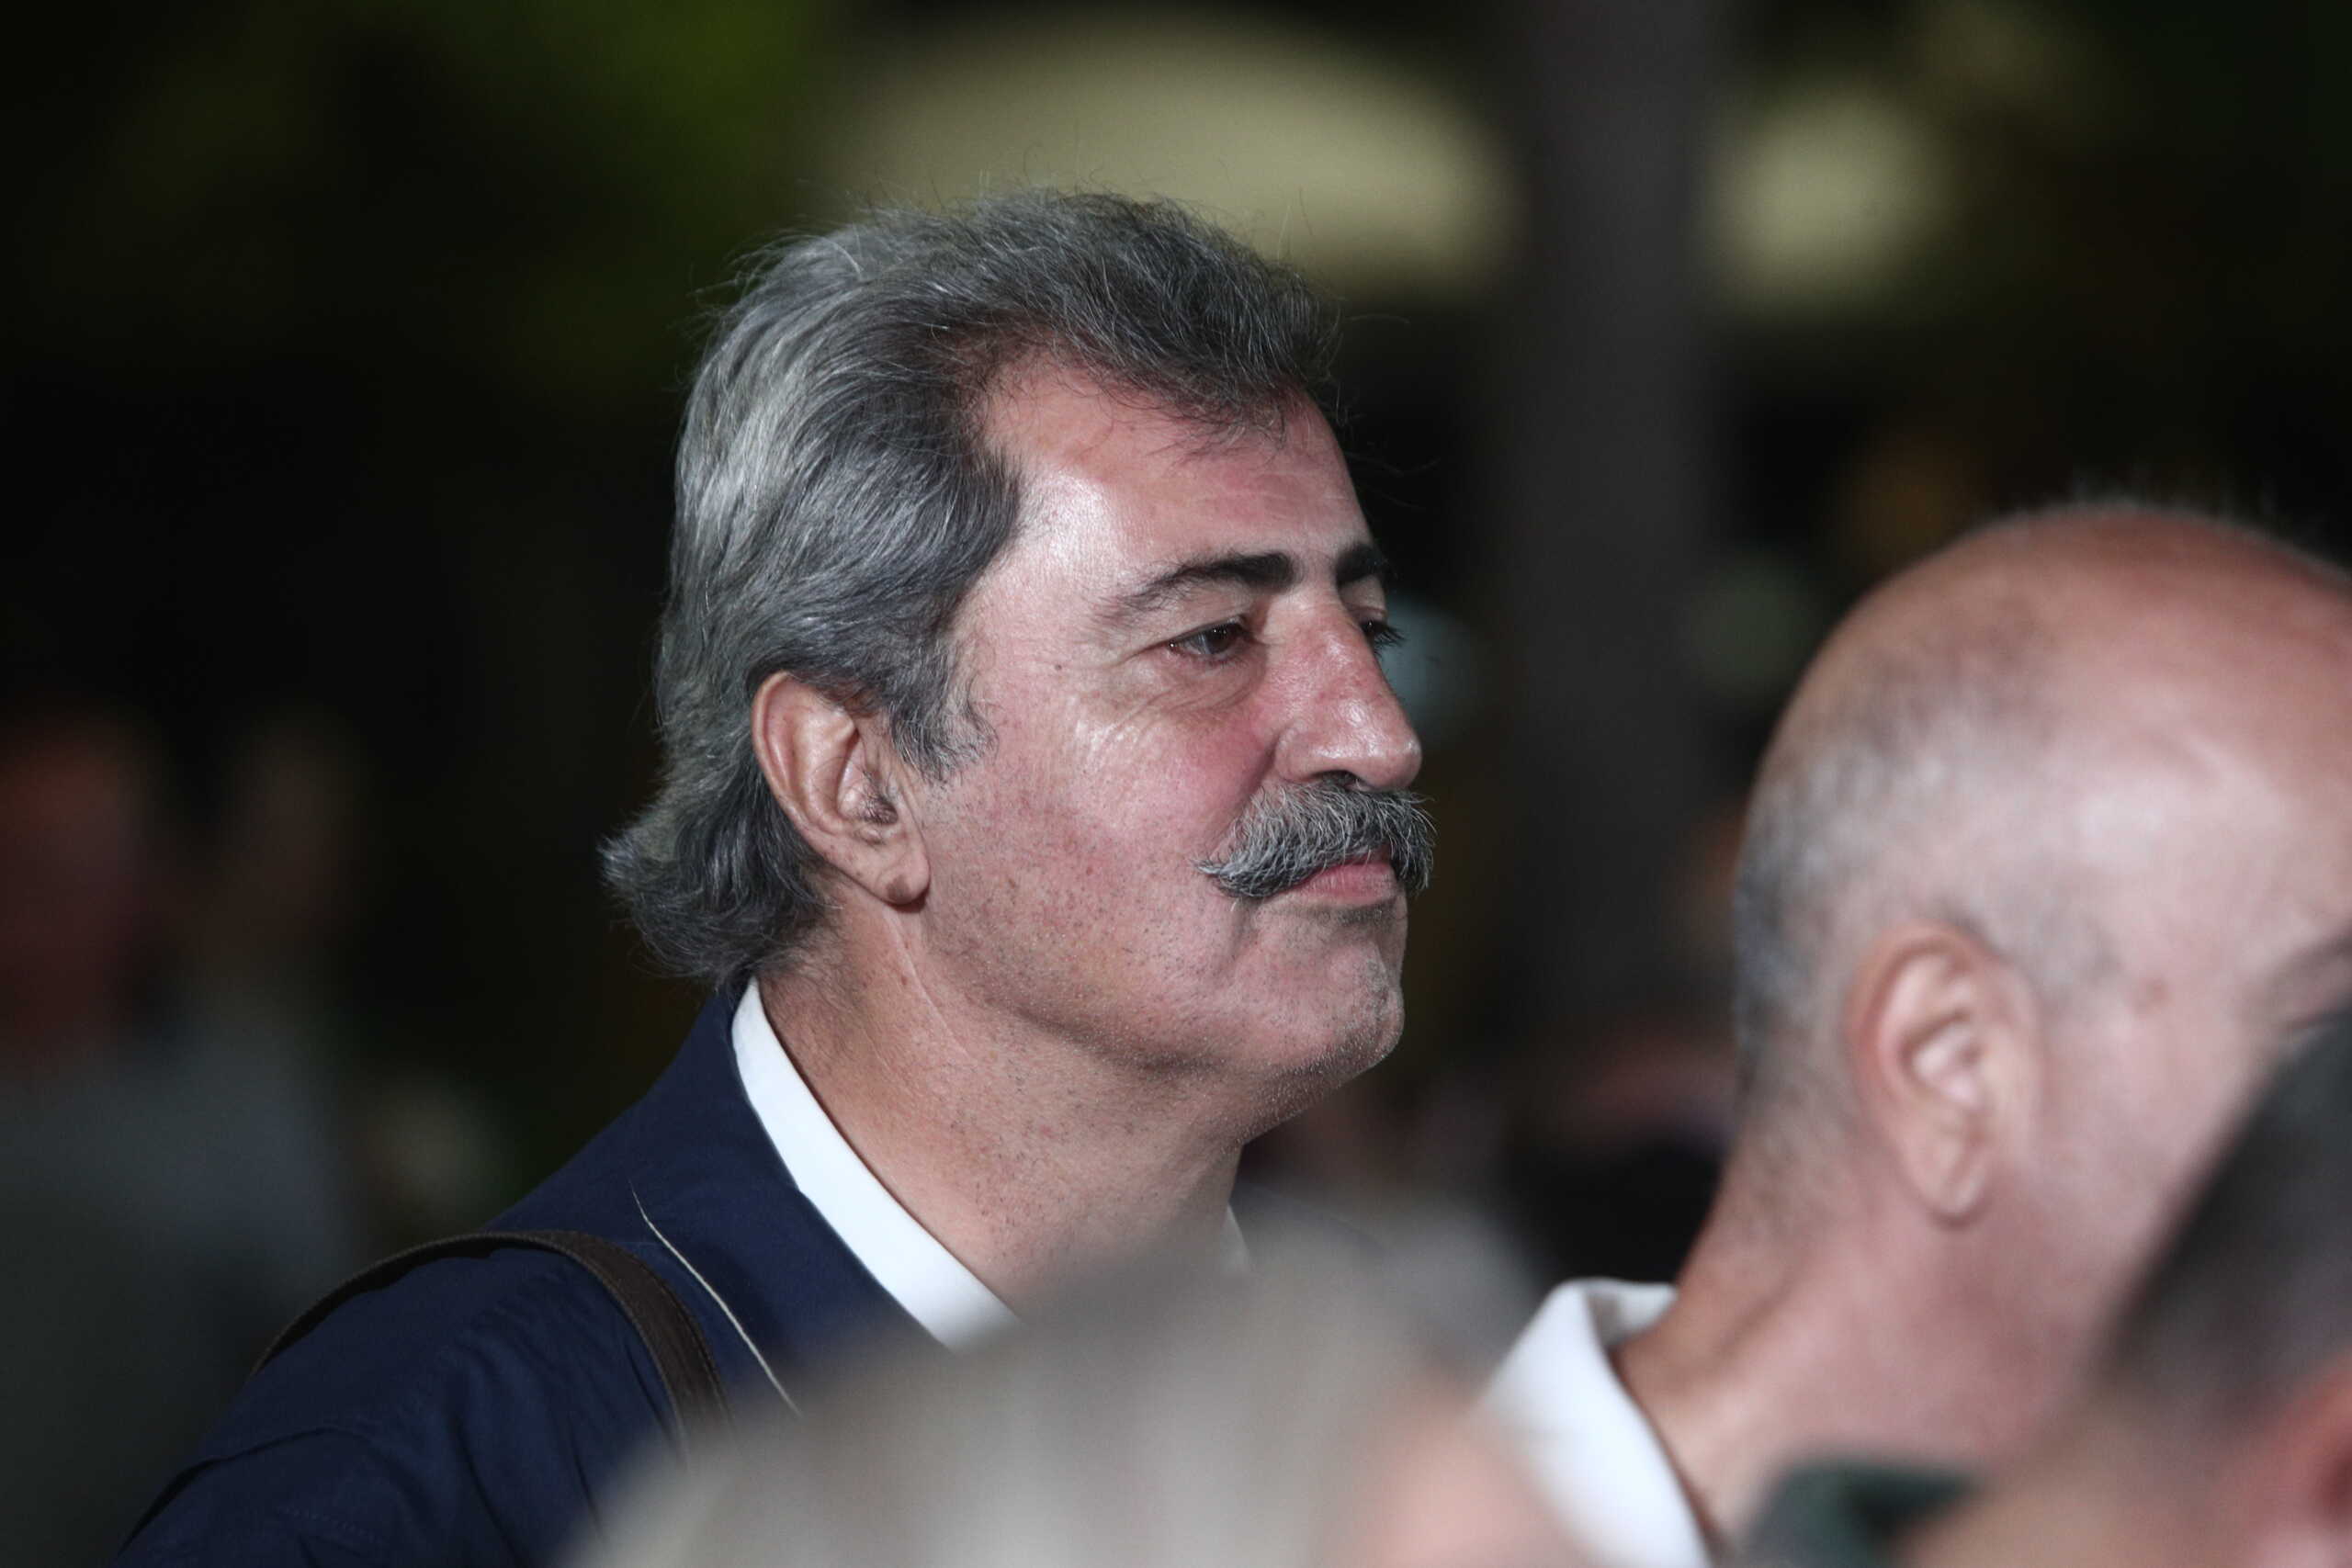 Καβγάς Πολάκη – Ομπρέλας στην Πολιτική Γραμματεία του ΣΥΡΙΖΑ